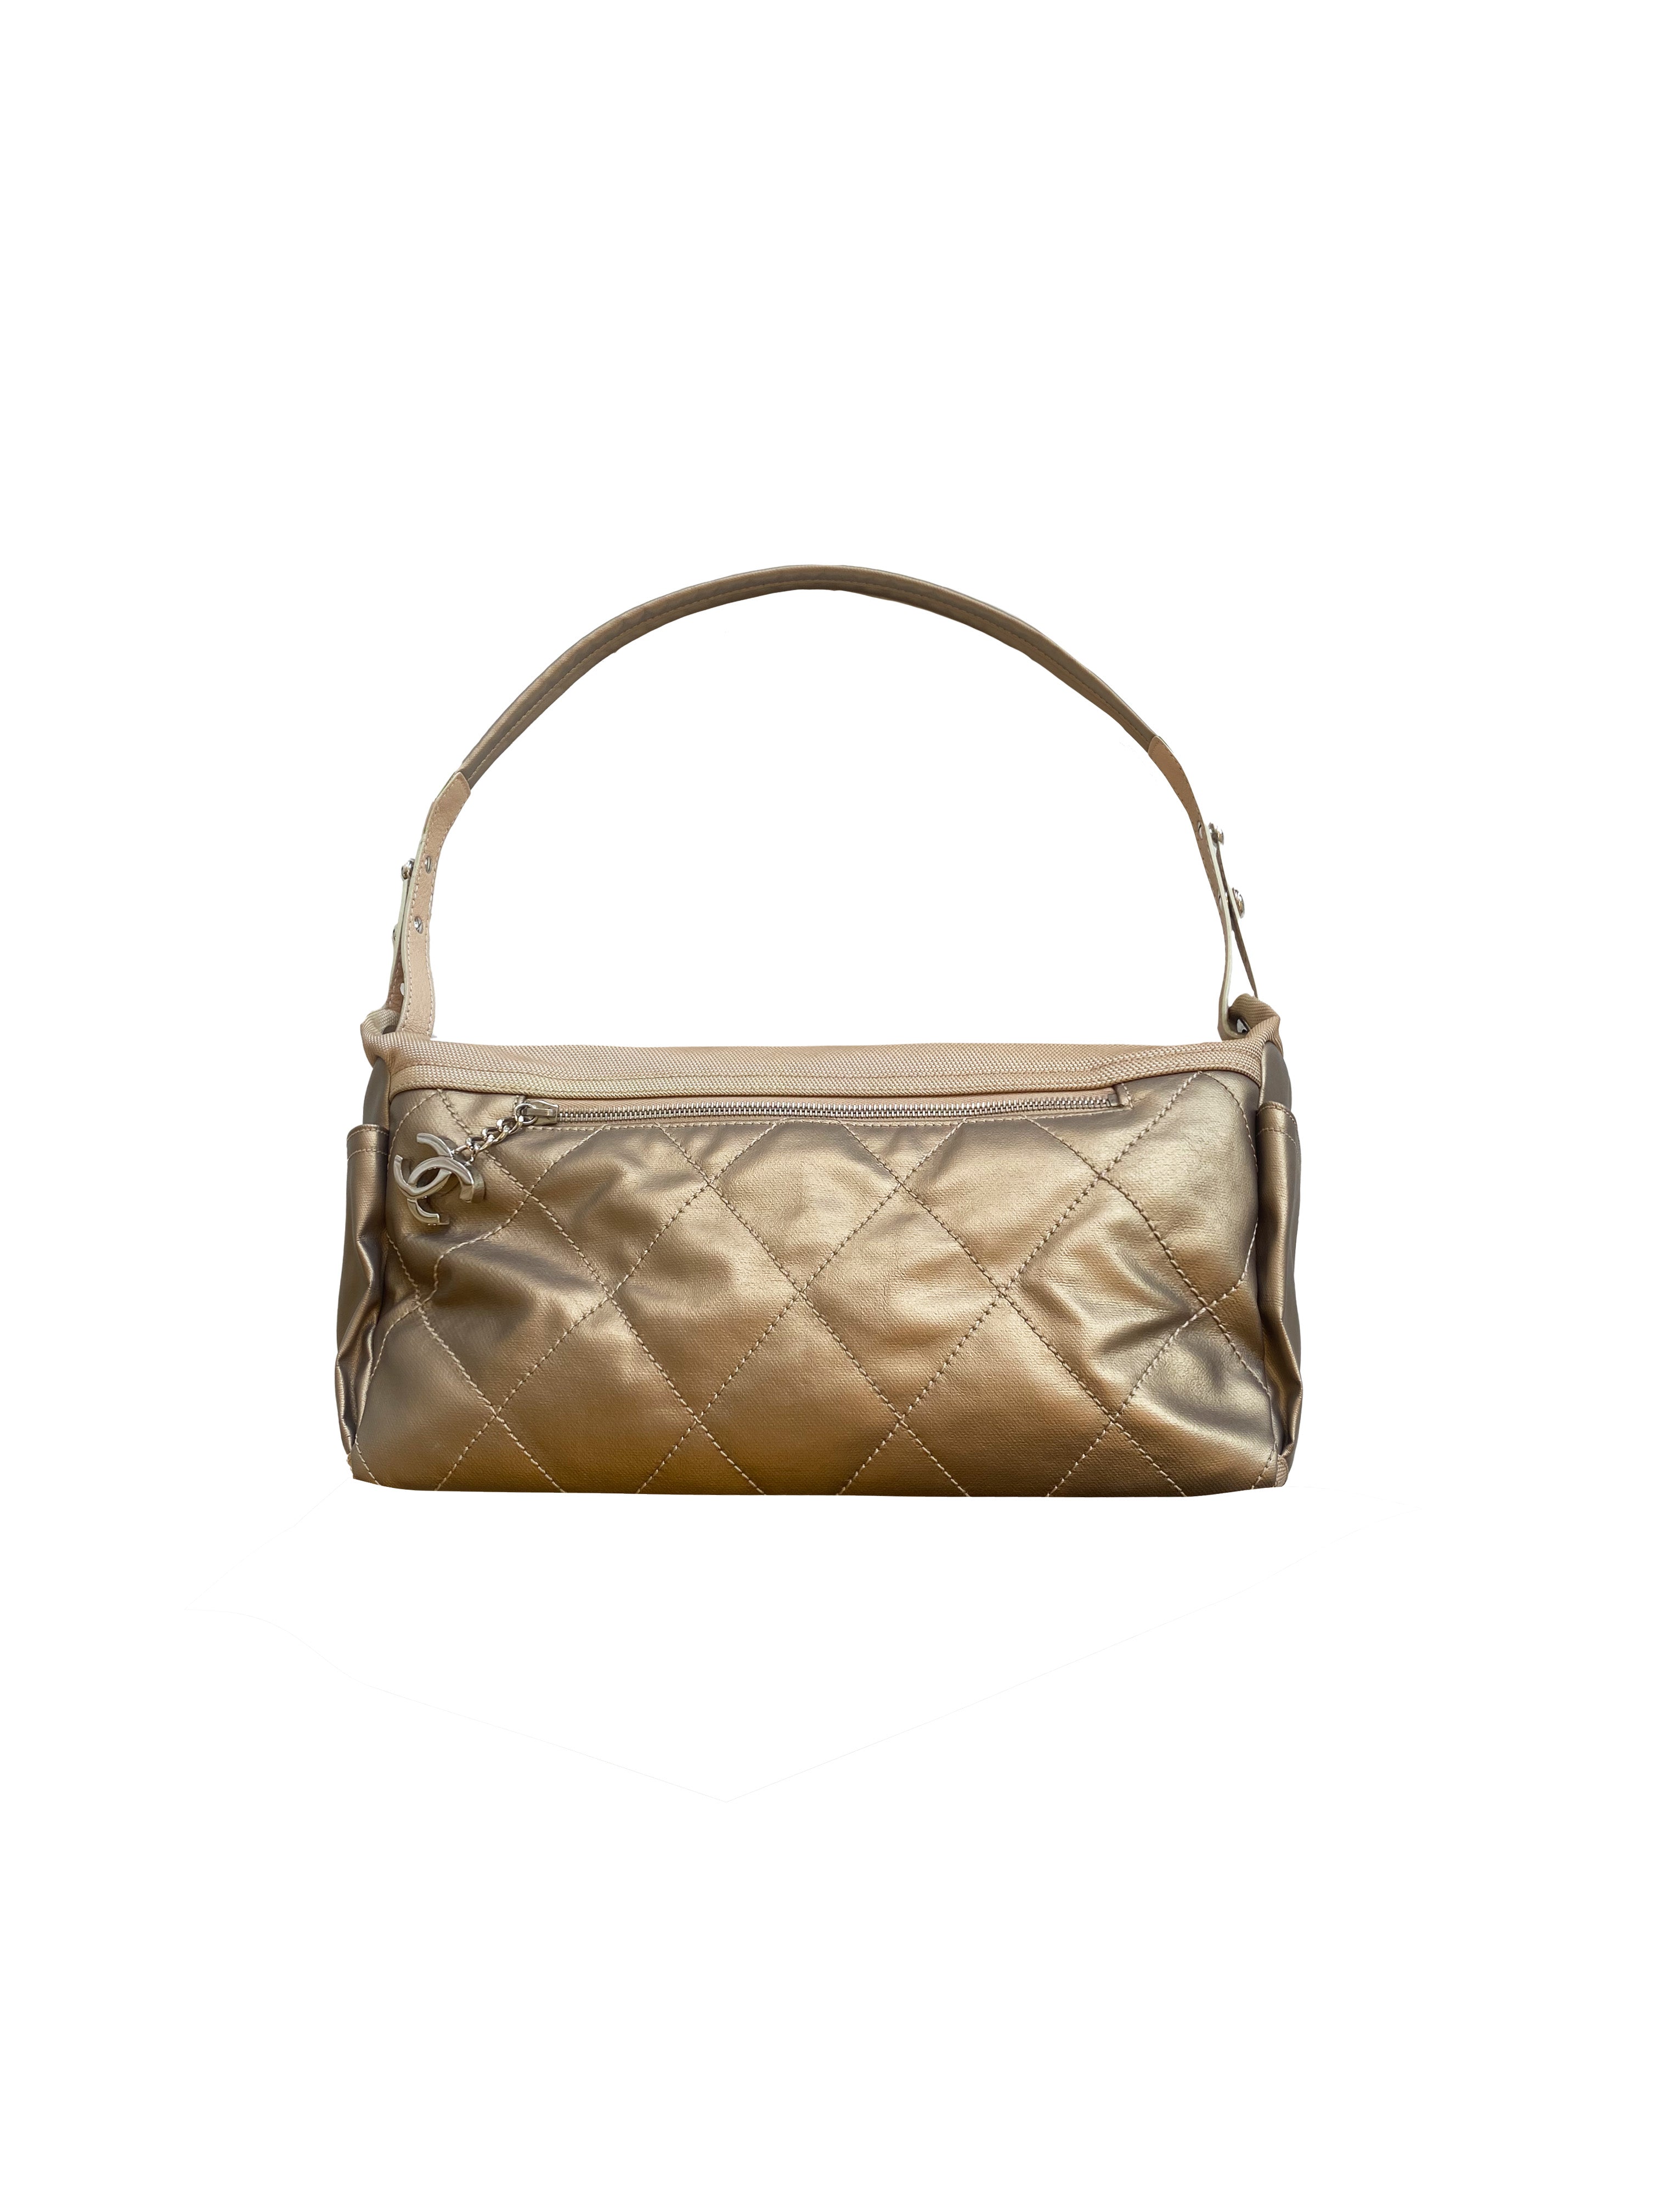 Chanel 2005-2006 Suede Shearling Handbag · INTO